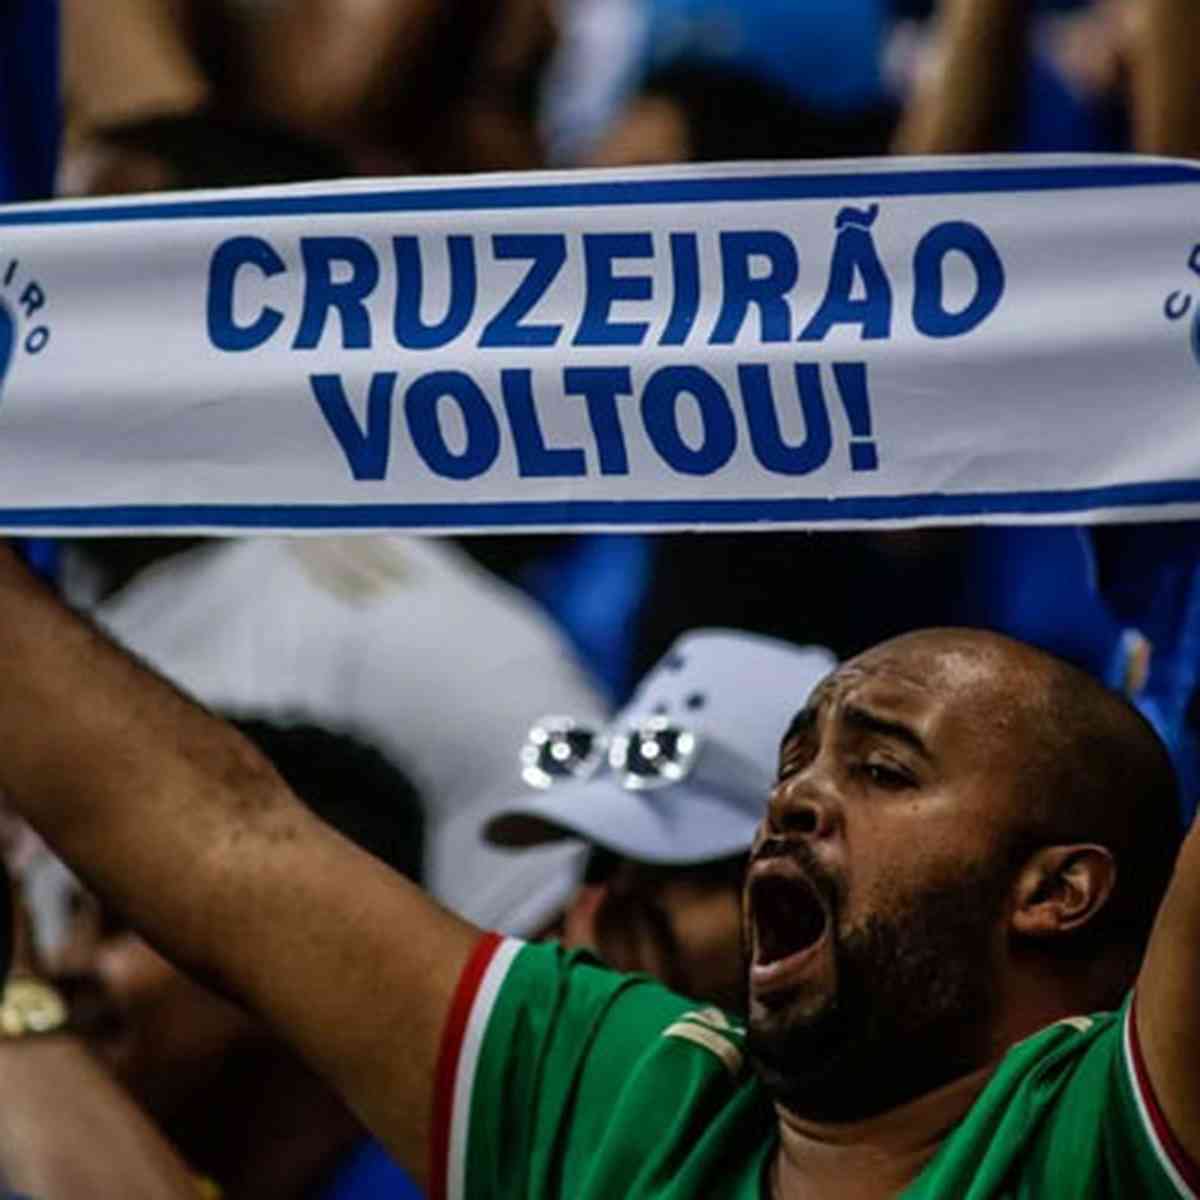 Campeã do Brasileirão Série B, SÃO PAULO, SP, 18 DE NOVEMBR…